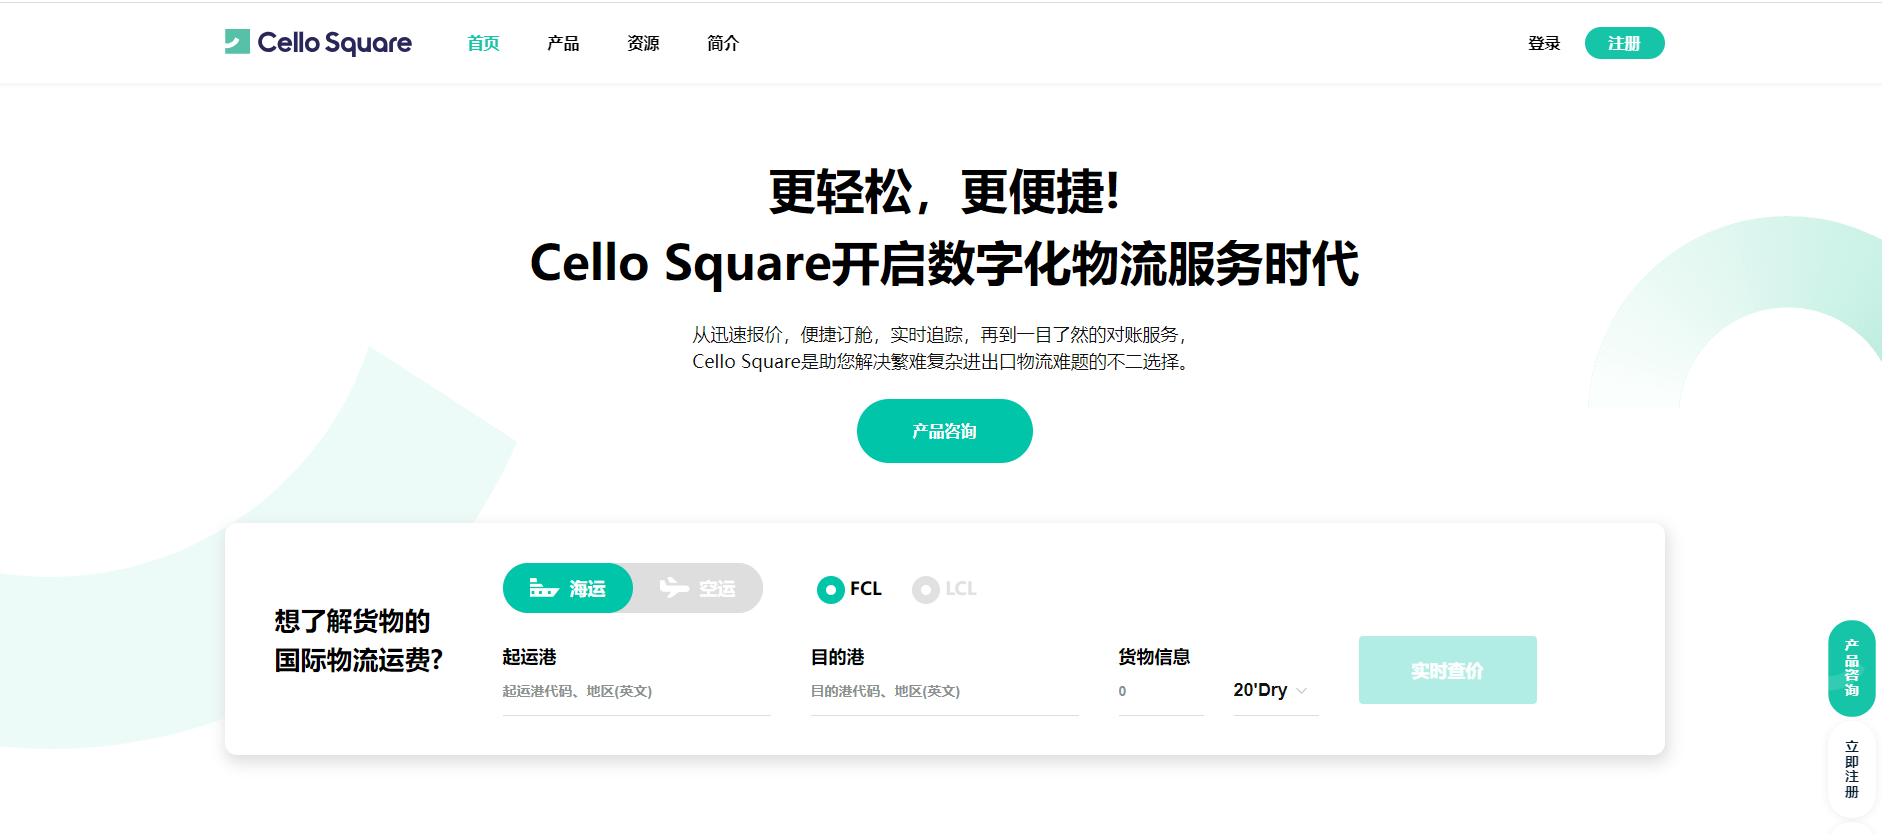 Cello Square 国际物流平台